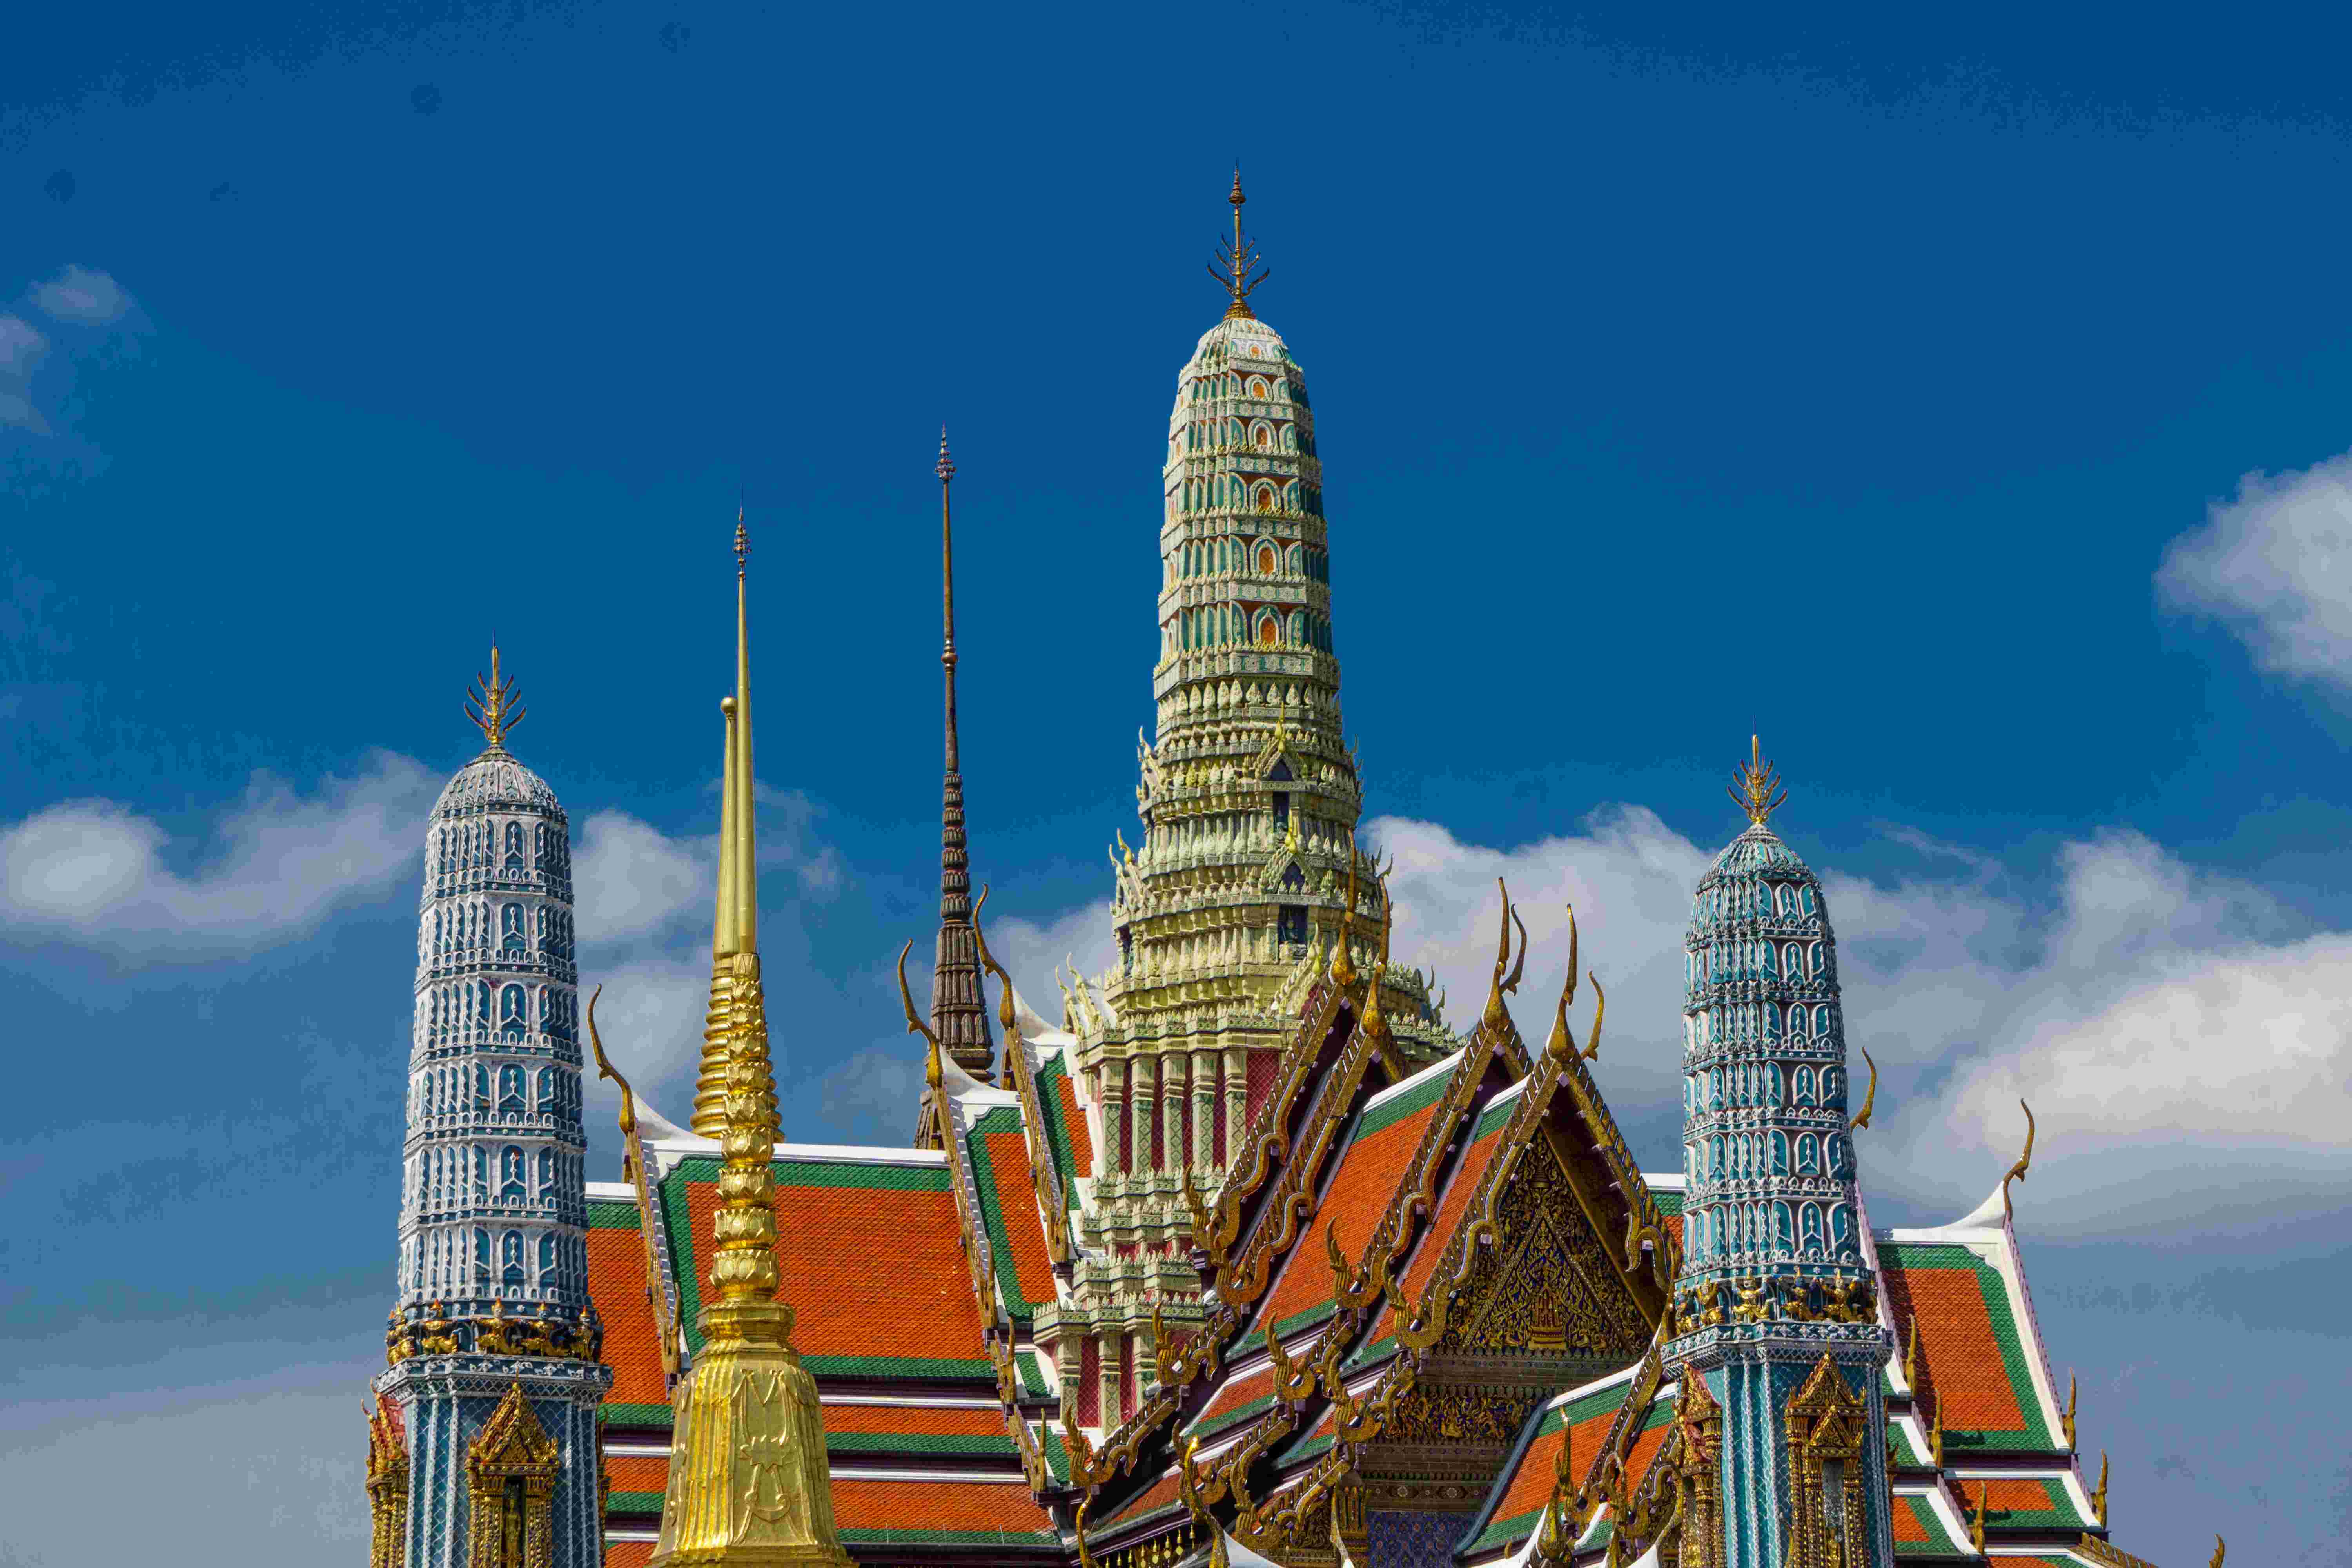 Bangkok in December